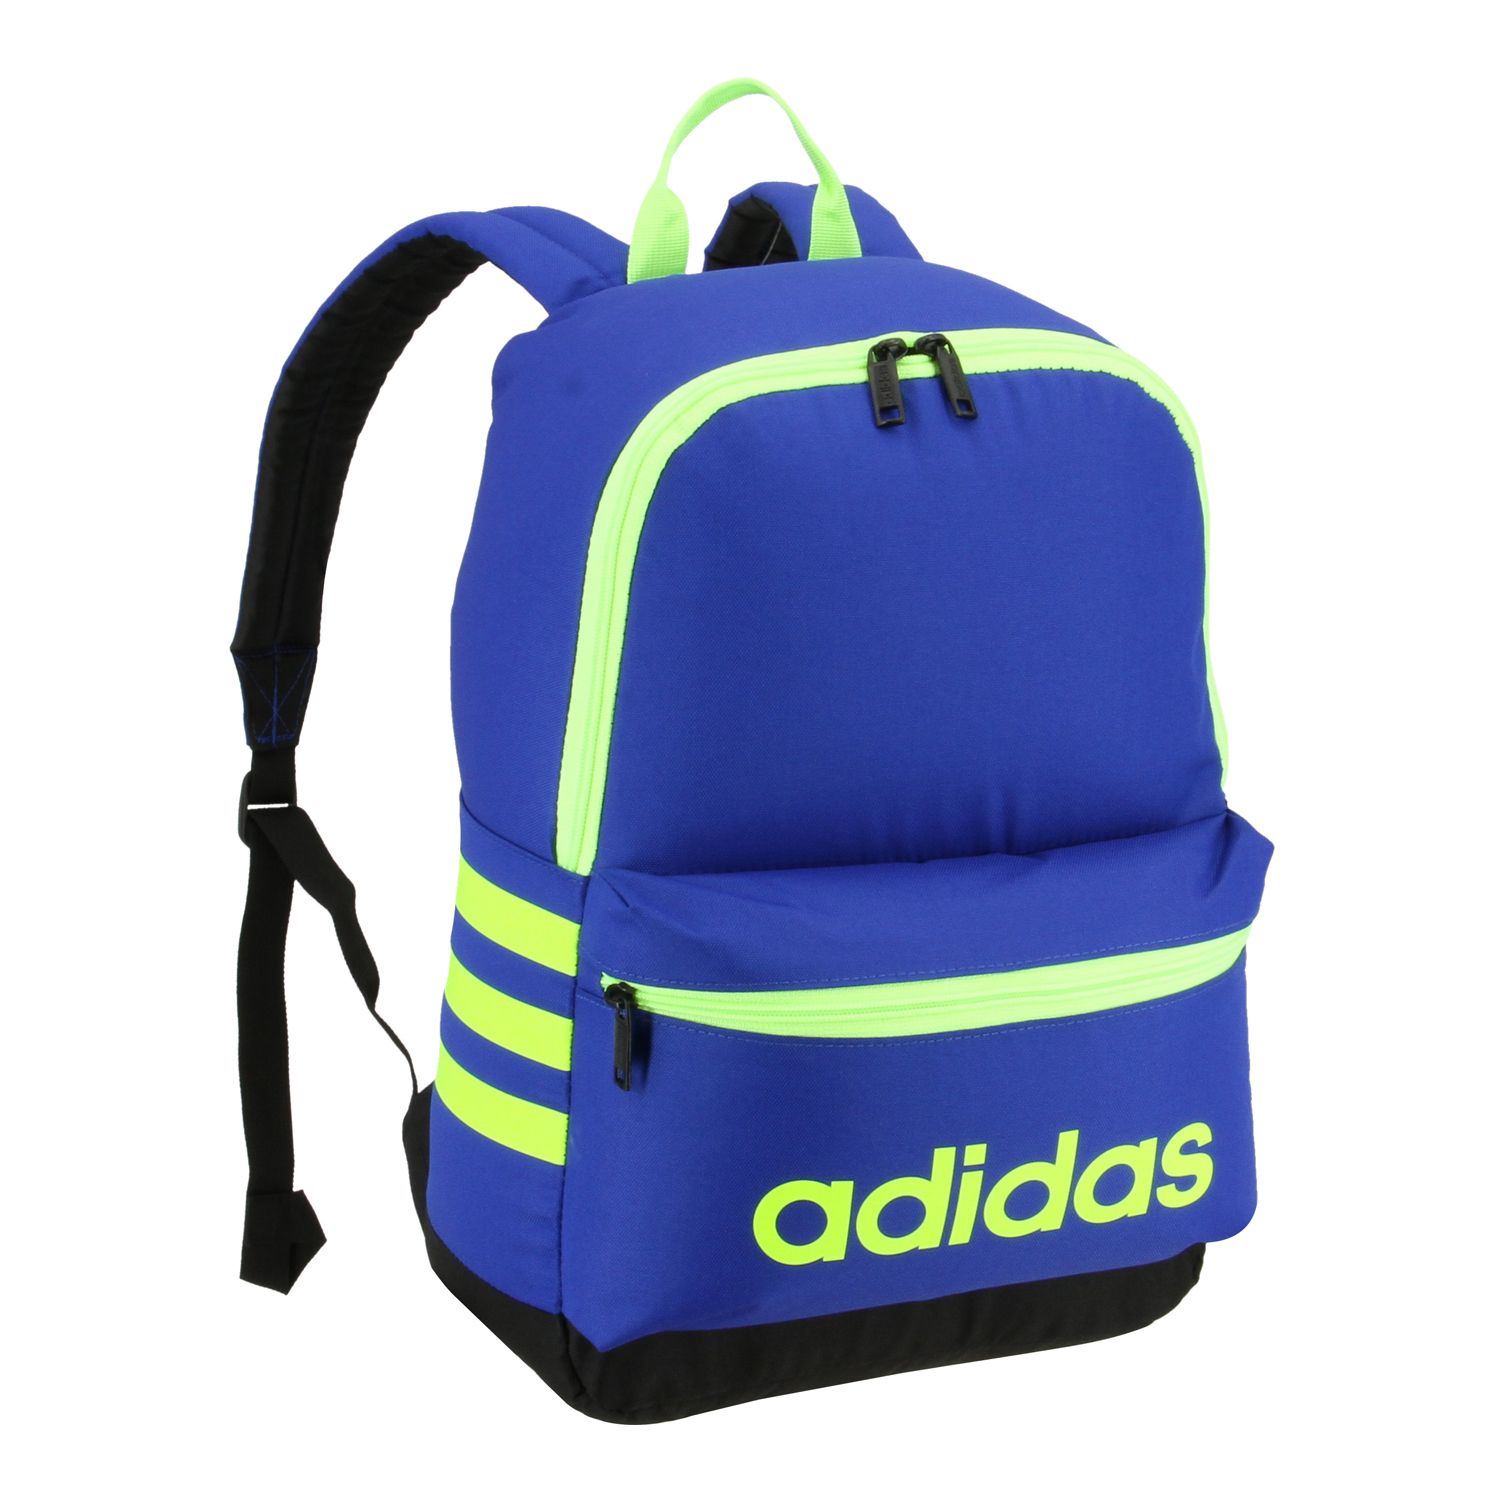 adidas backpacks at kohl's